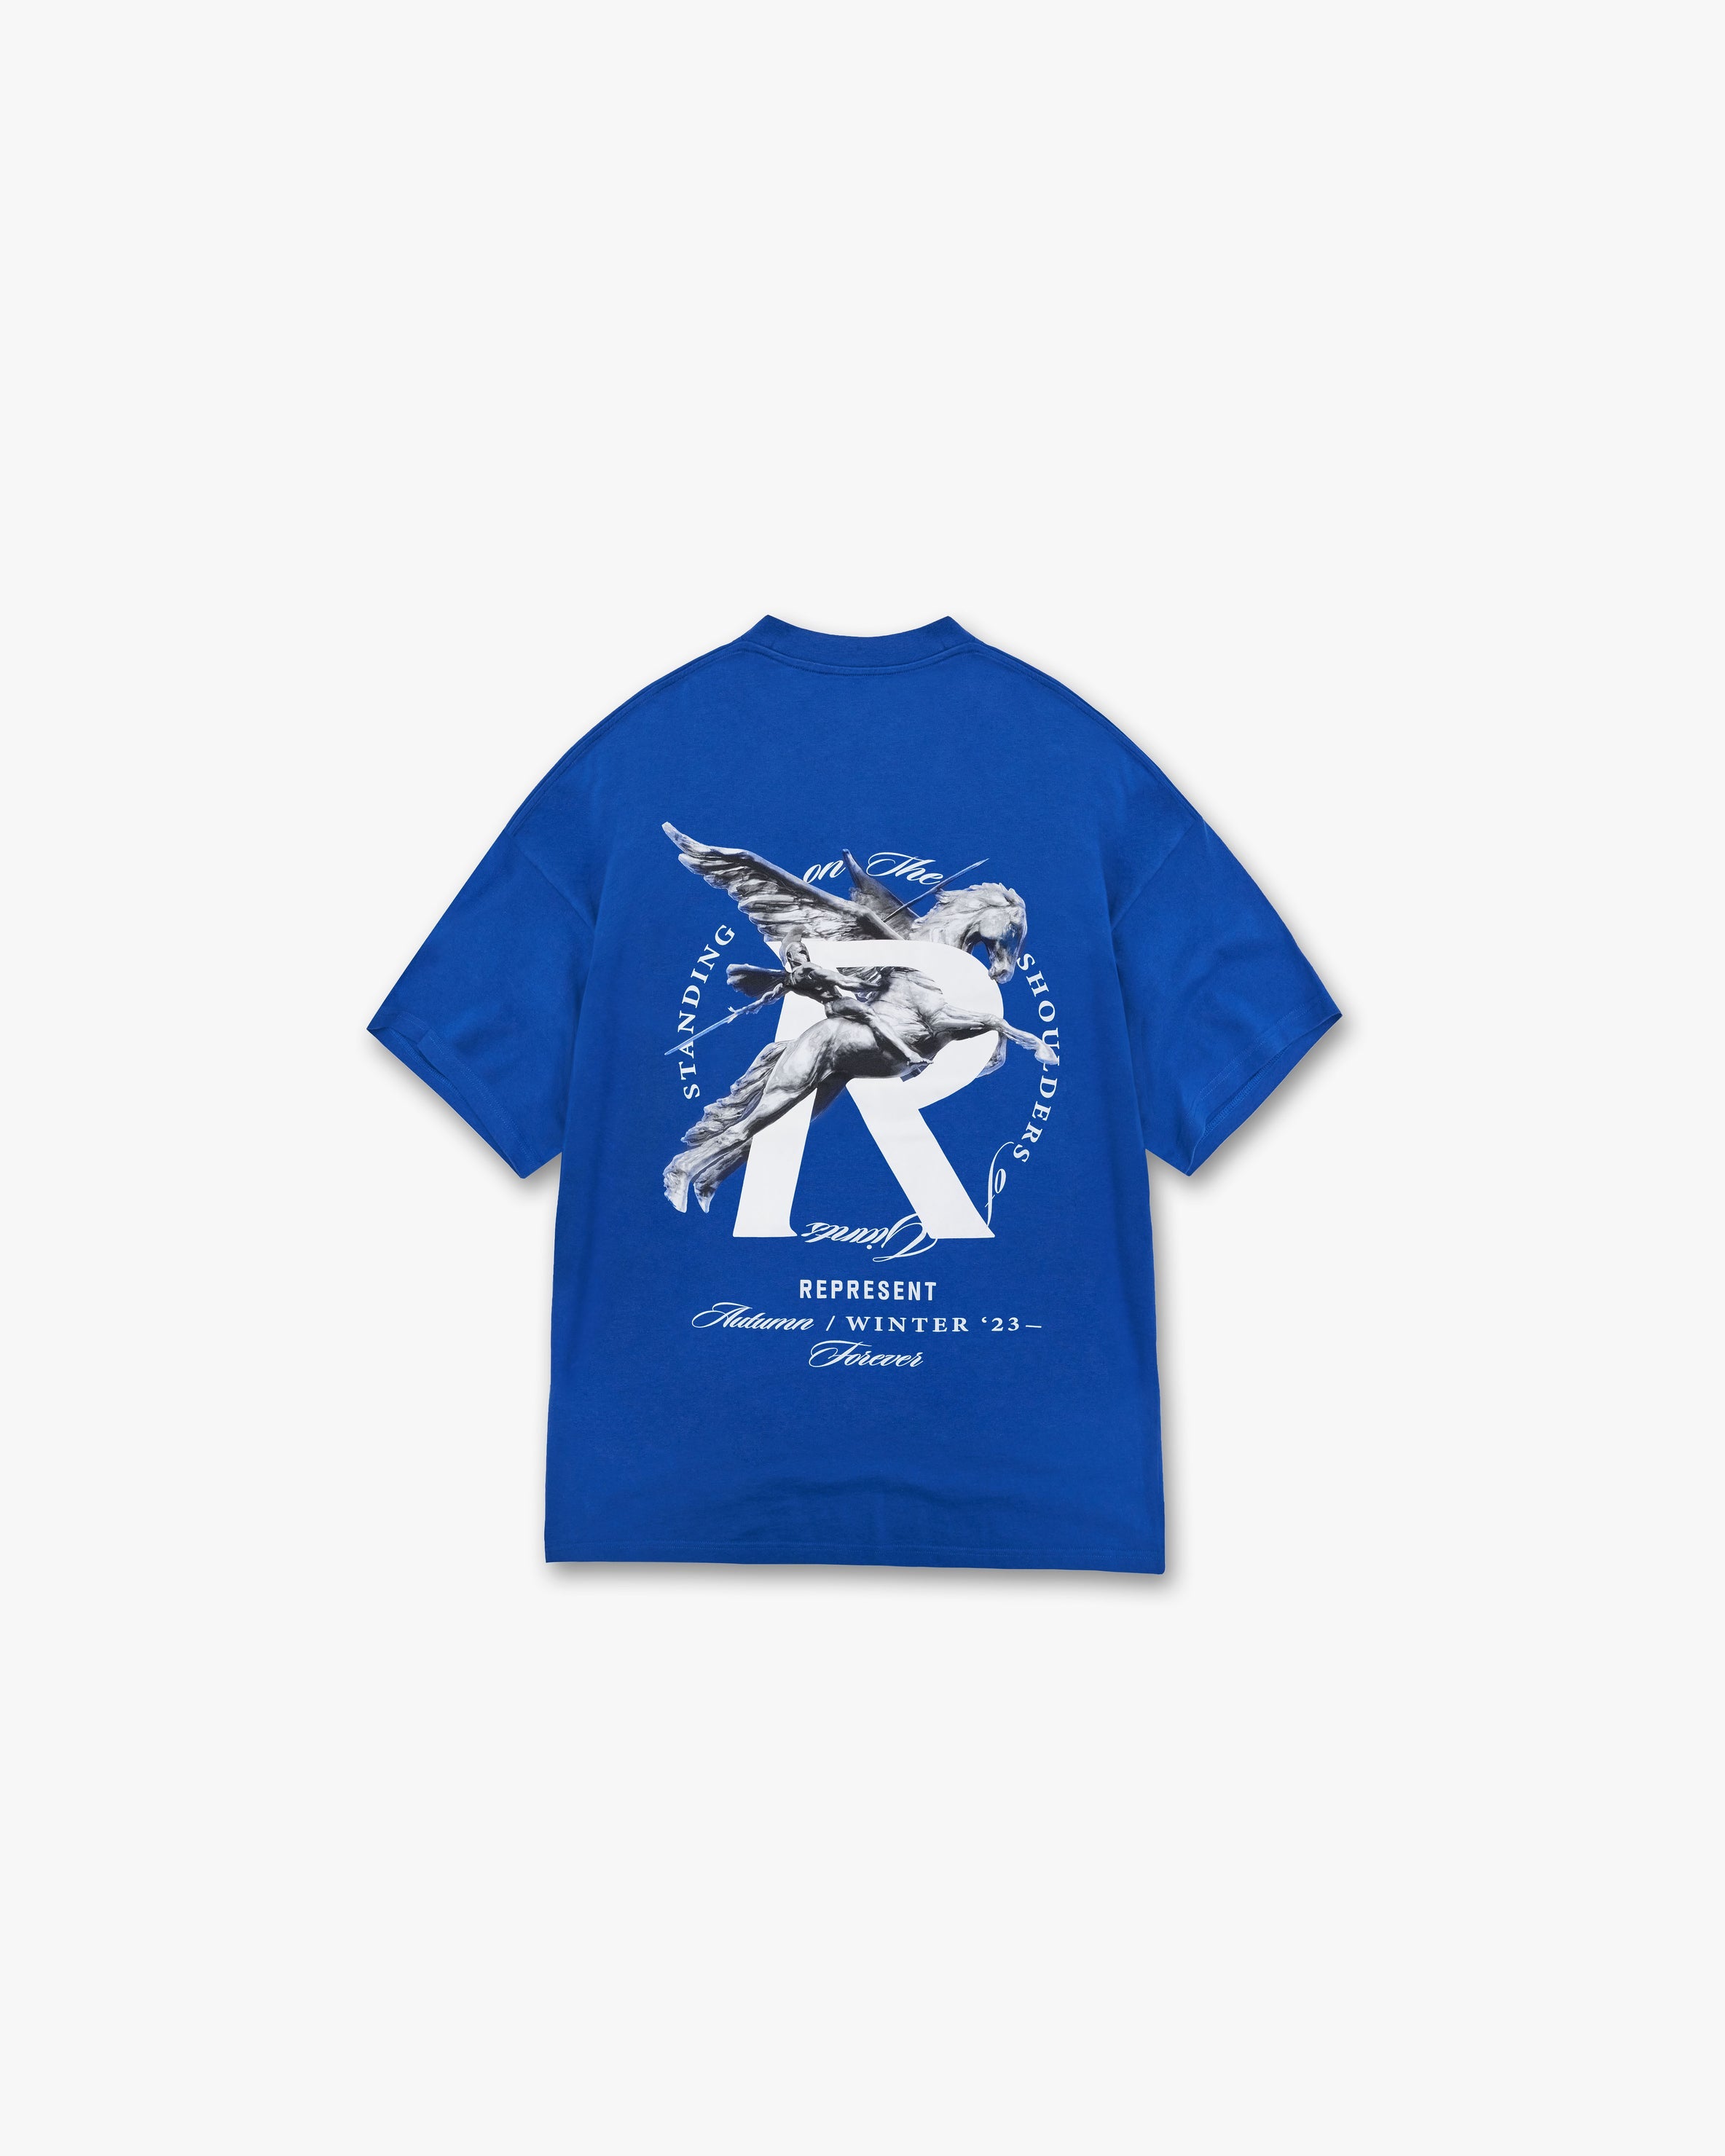 Giants T-Shirt - Cobalt